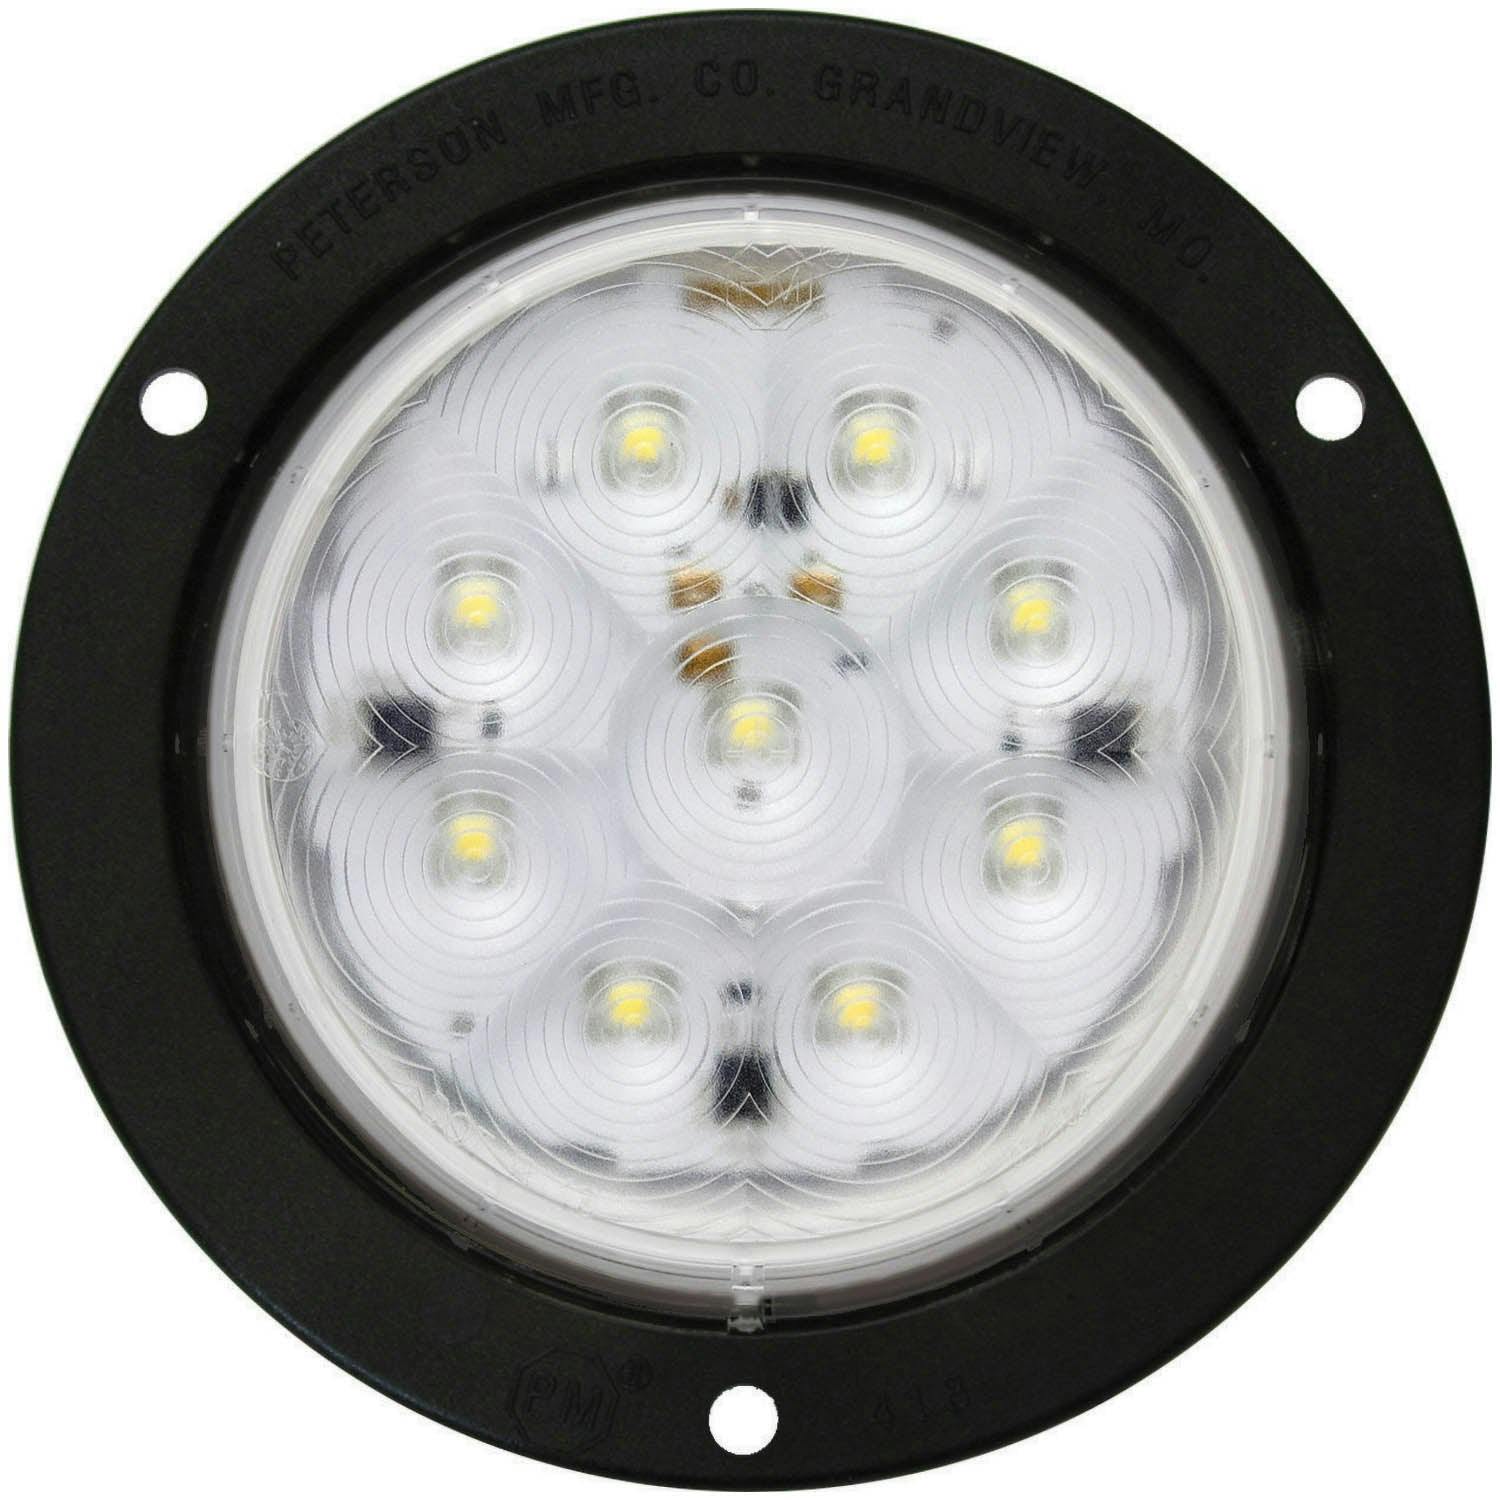 LED Work Light, Round, Flange-Mount 4", white, mfg pack (Pack of 50)